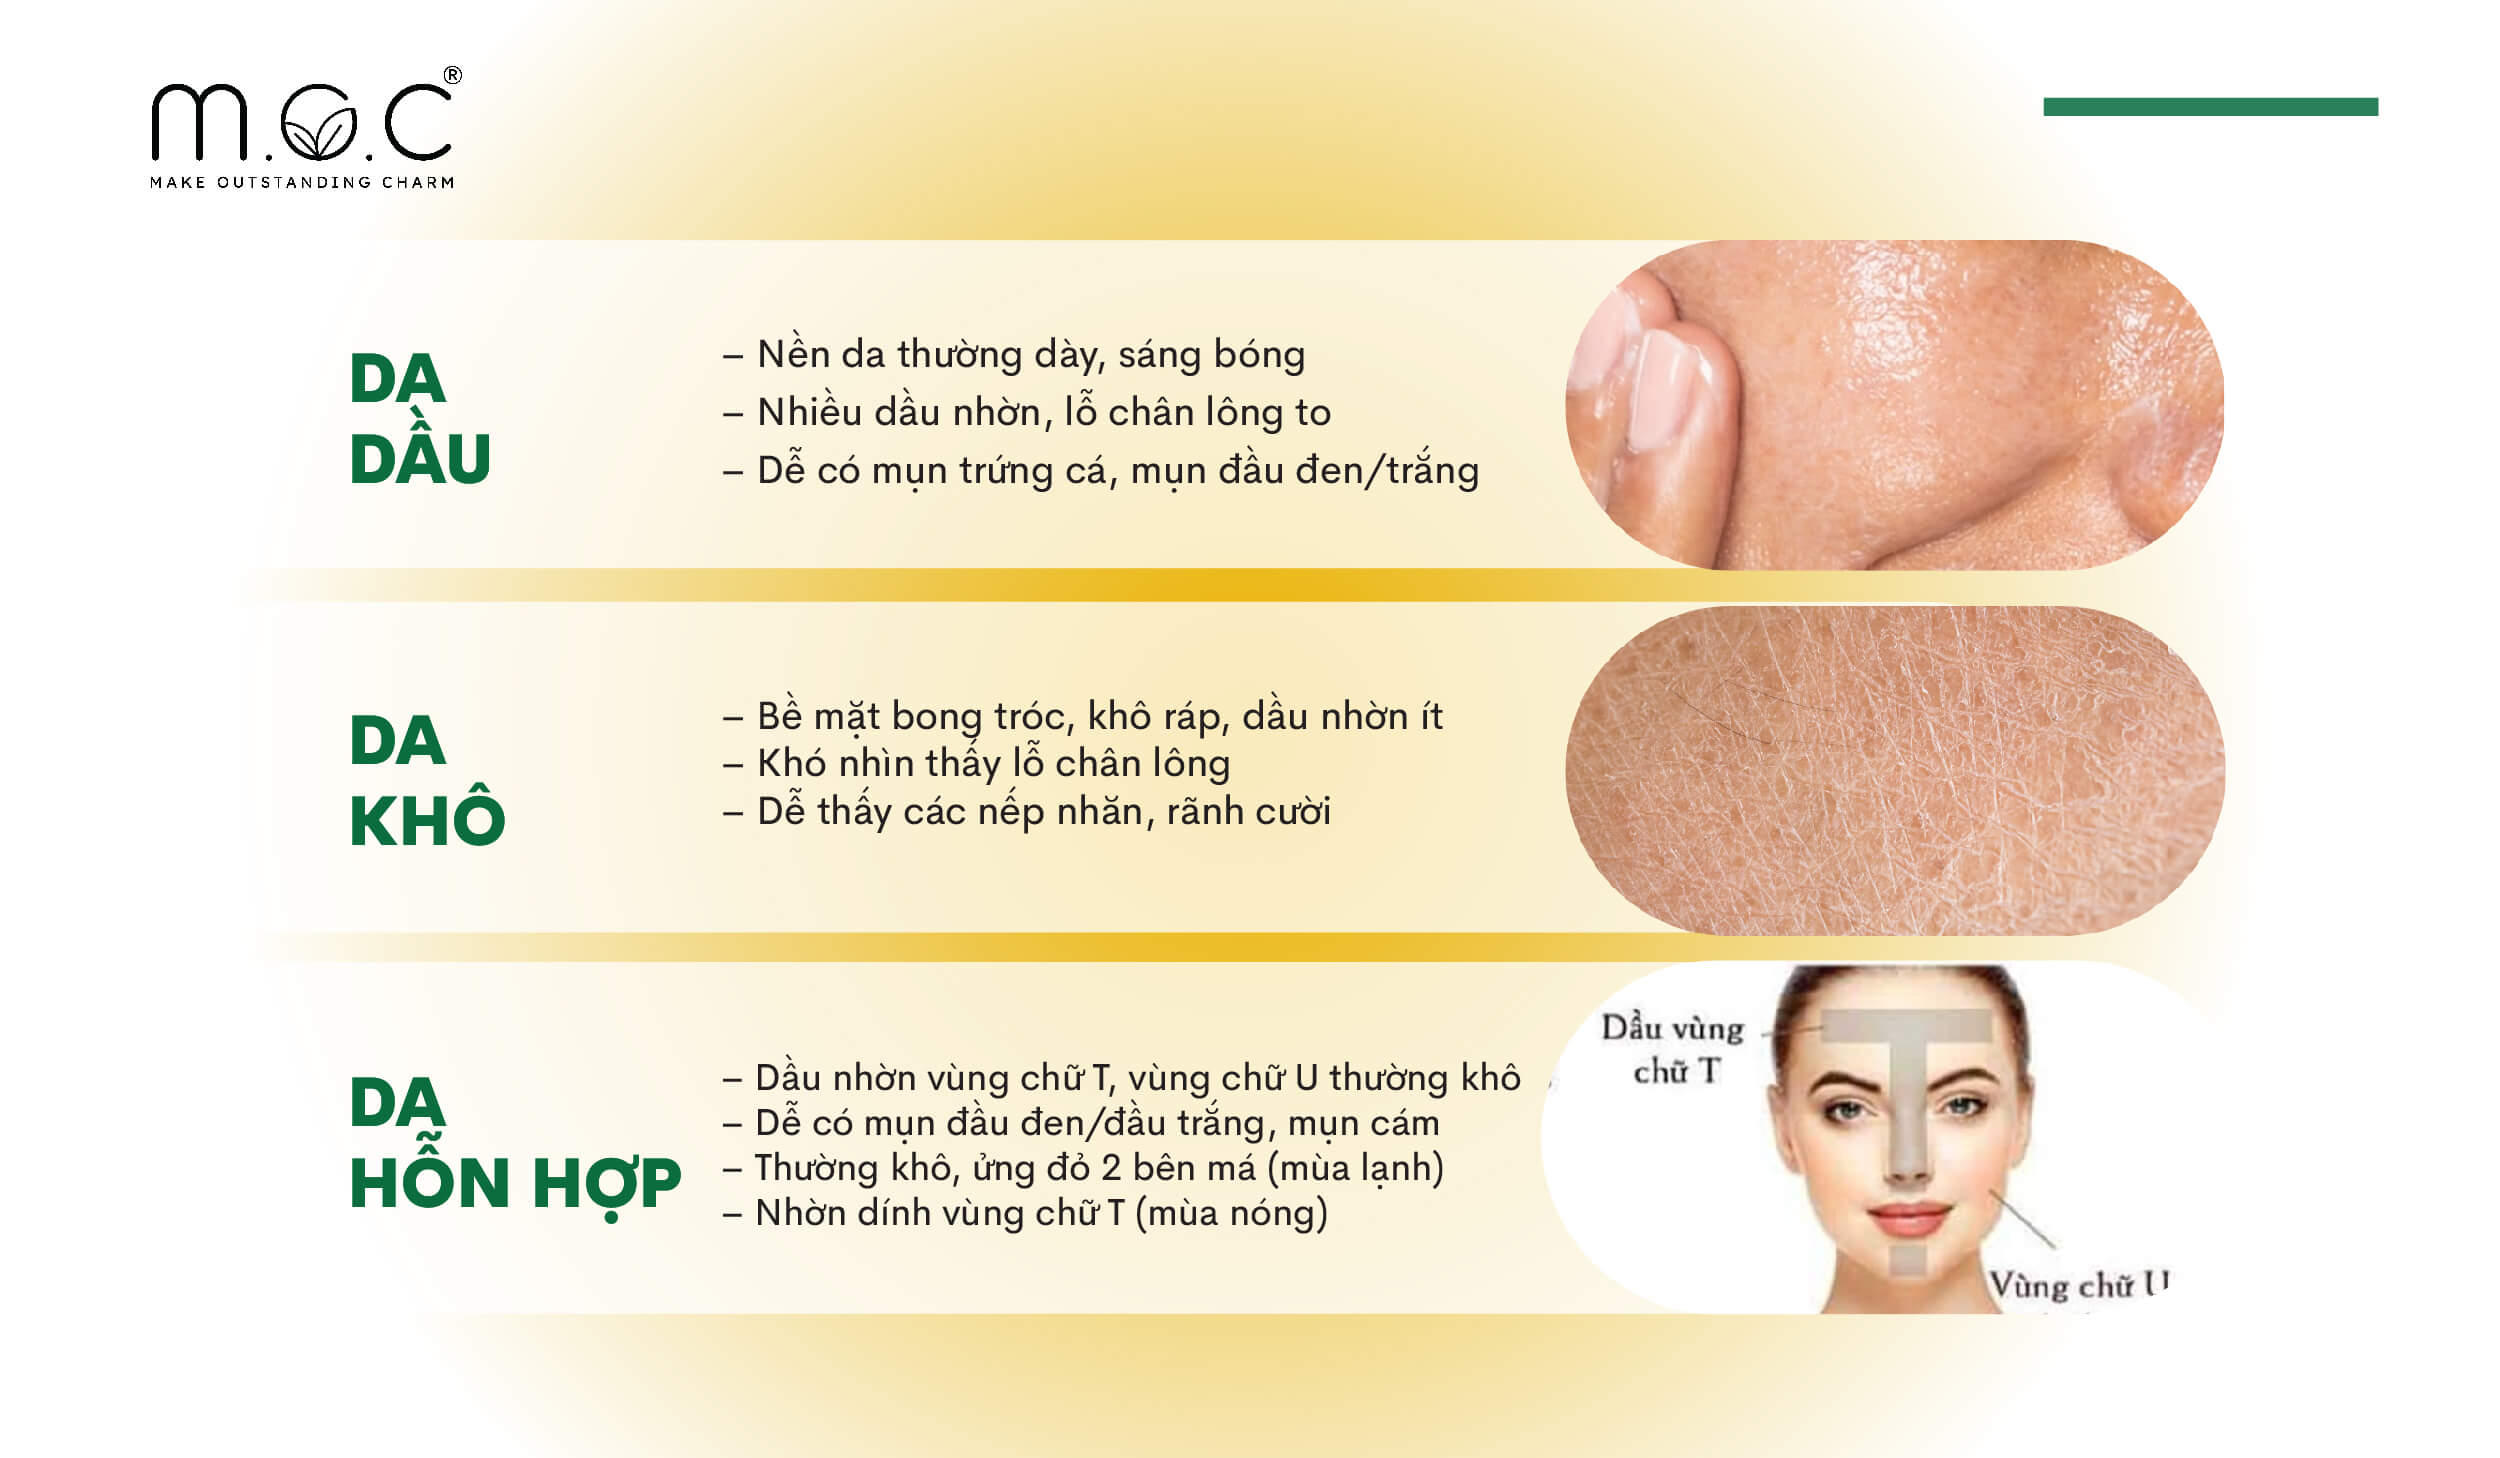 Da của bạn thuộc nhóm Da dầu, da khô hay da hỗn hợp?